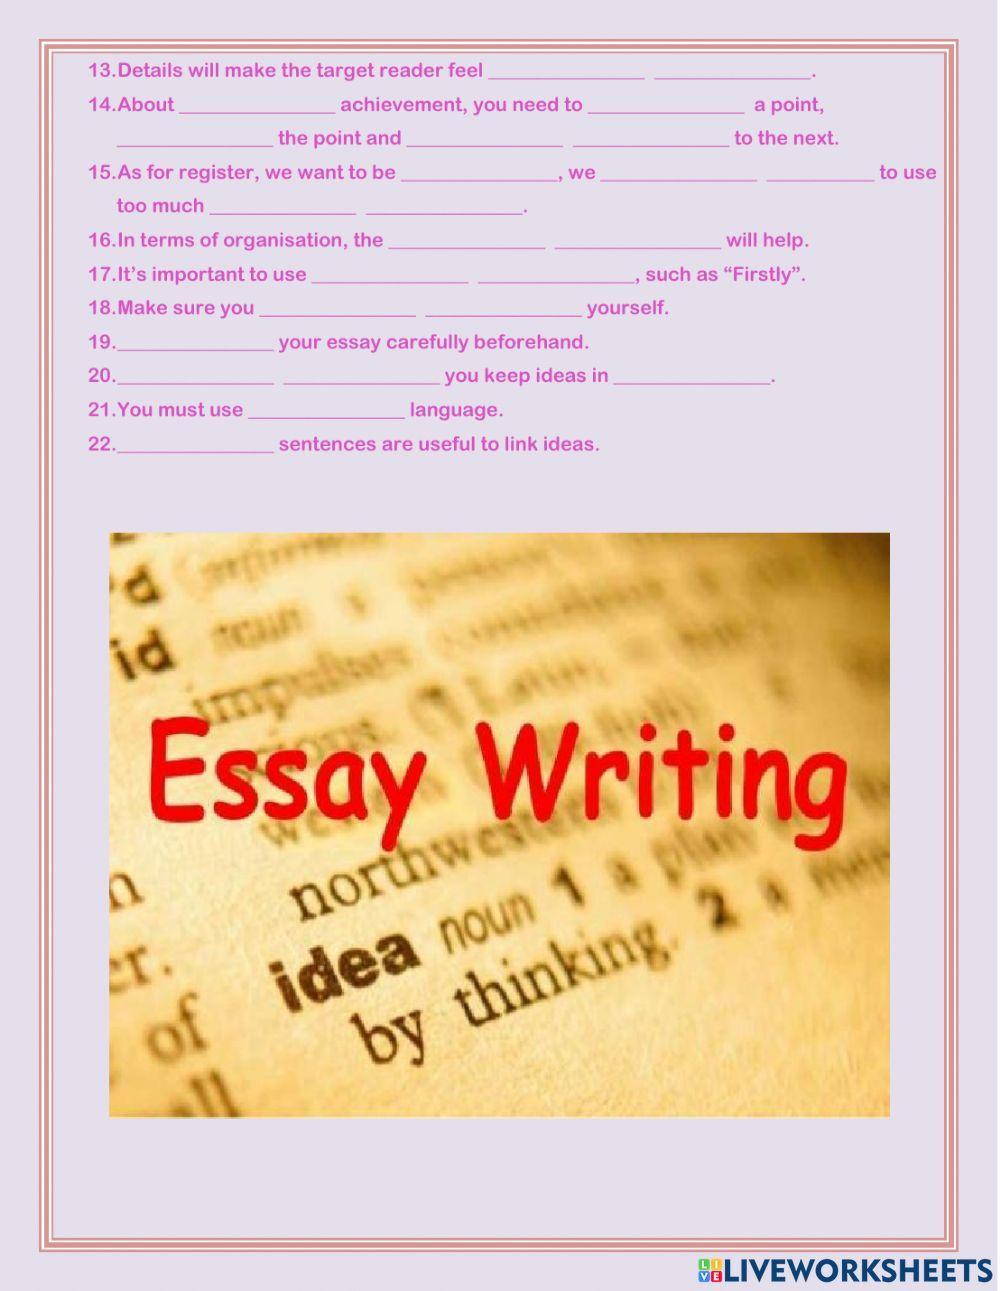 CAE essay writing